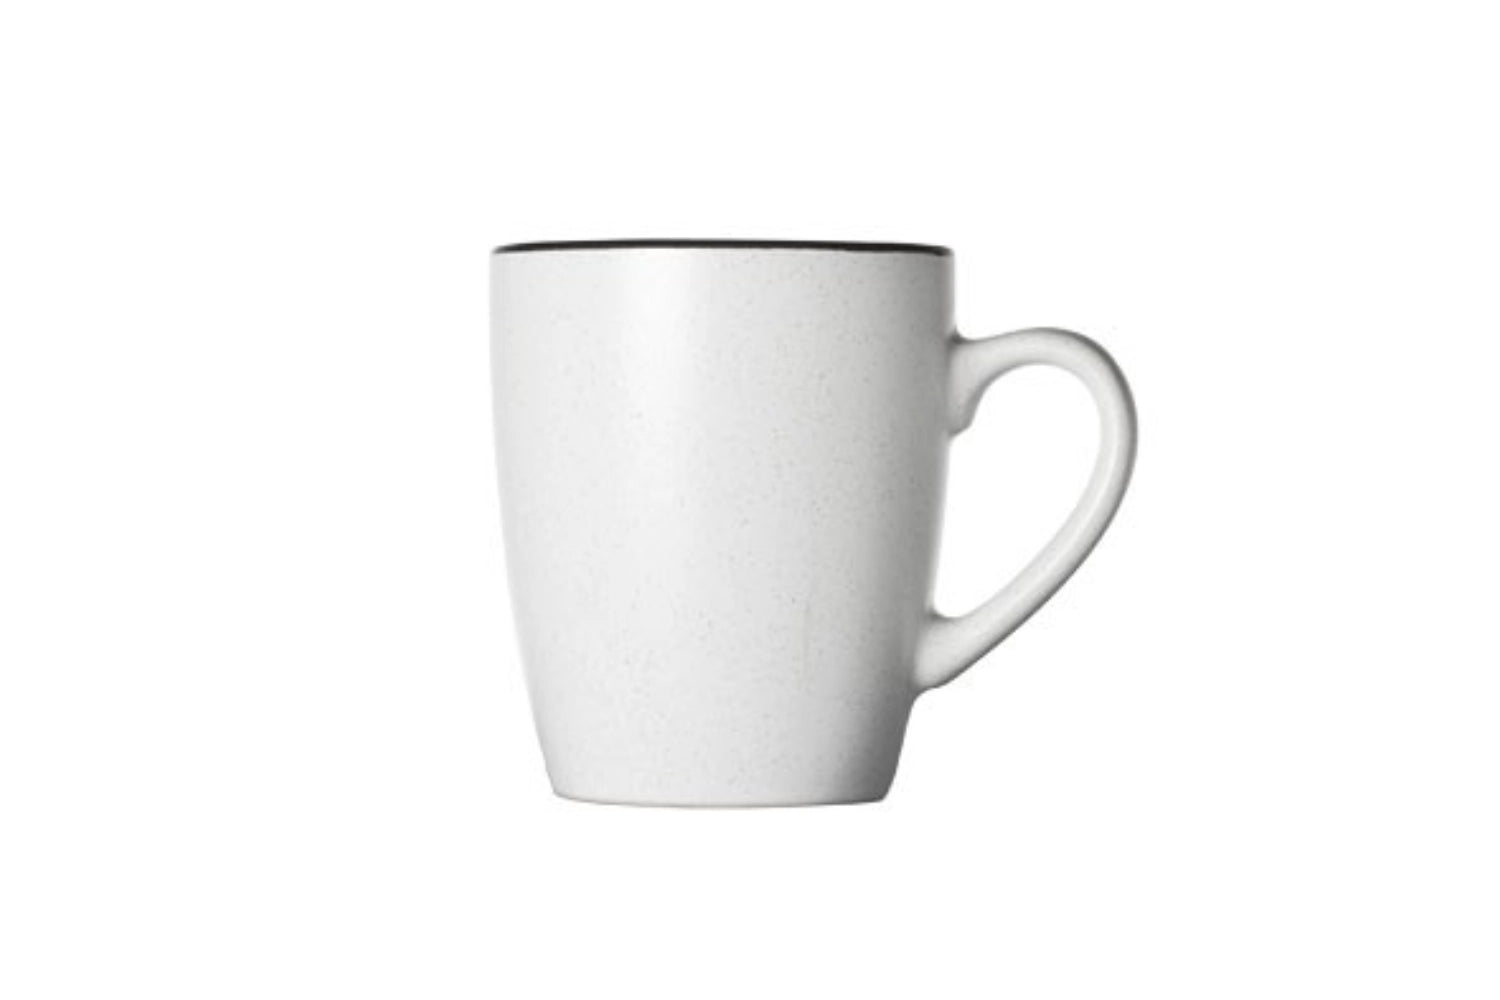 Speckle weiss, Mug, 8.7 x 5.9 x 10.3 cm - KAQTU Design